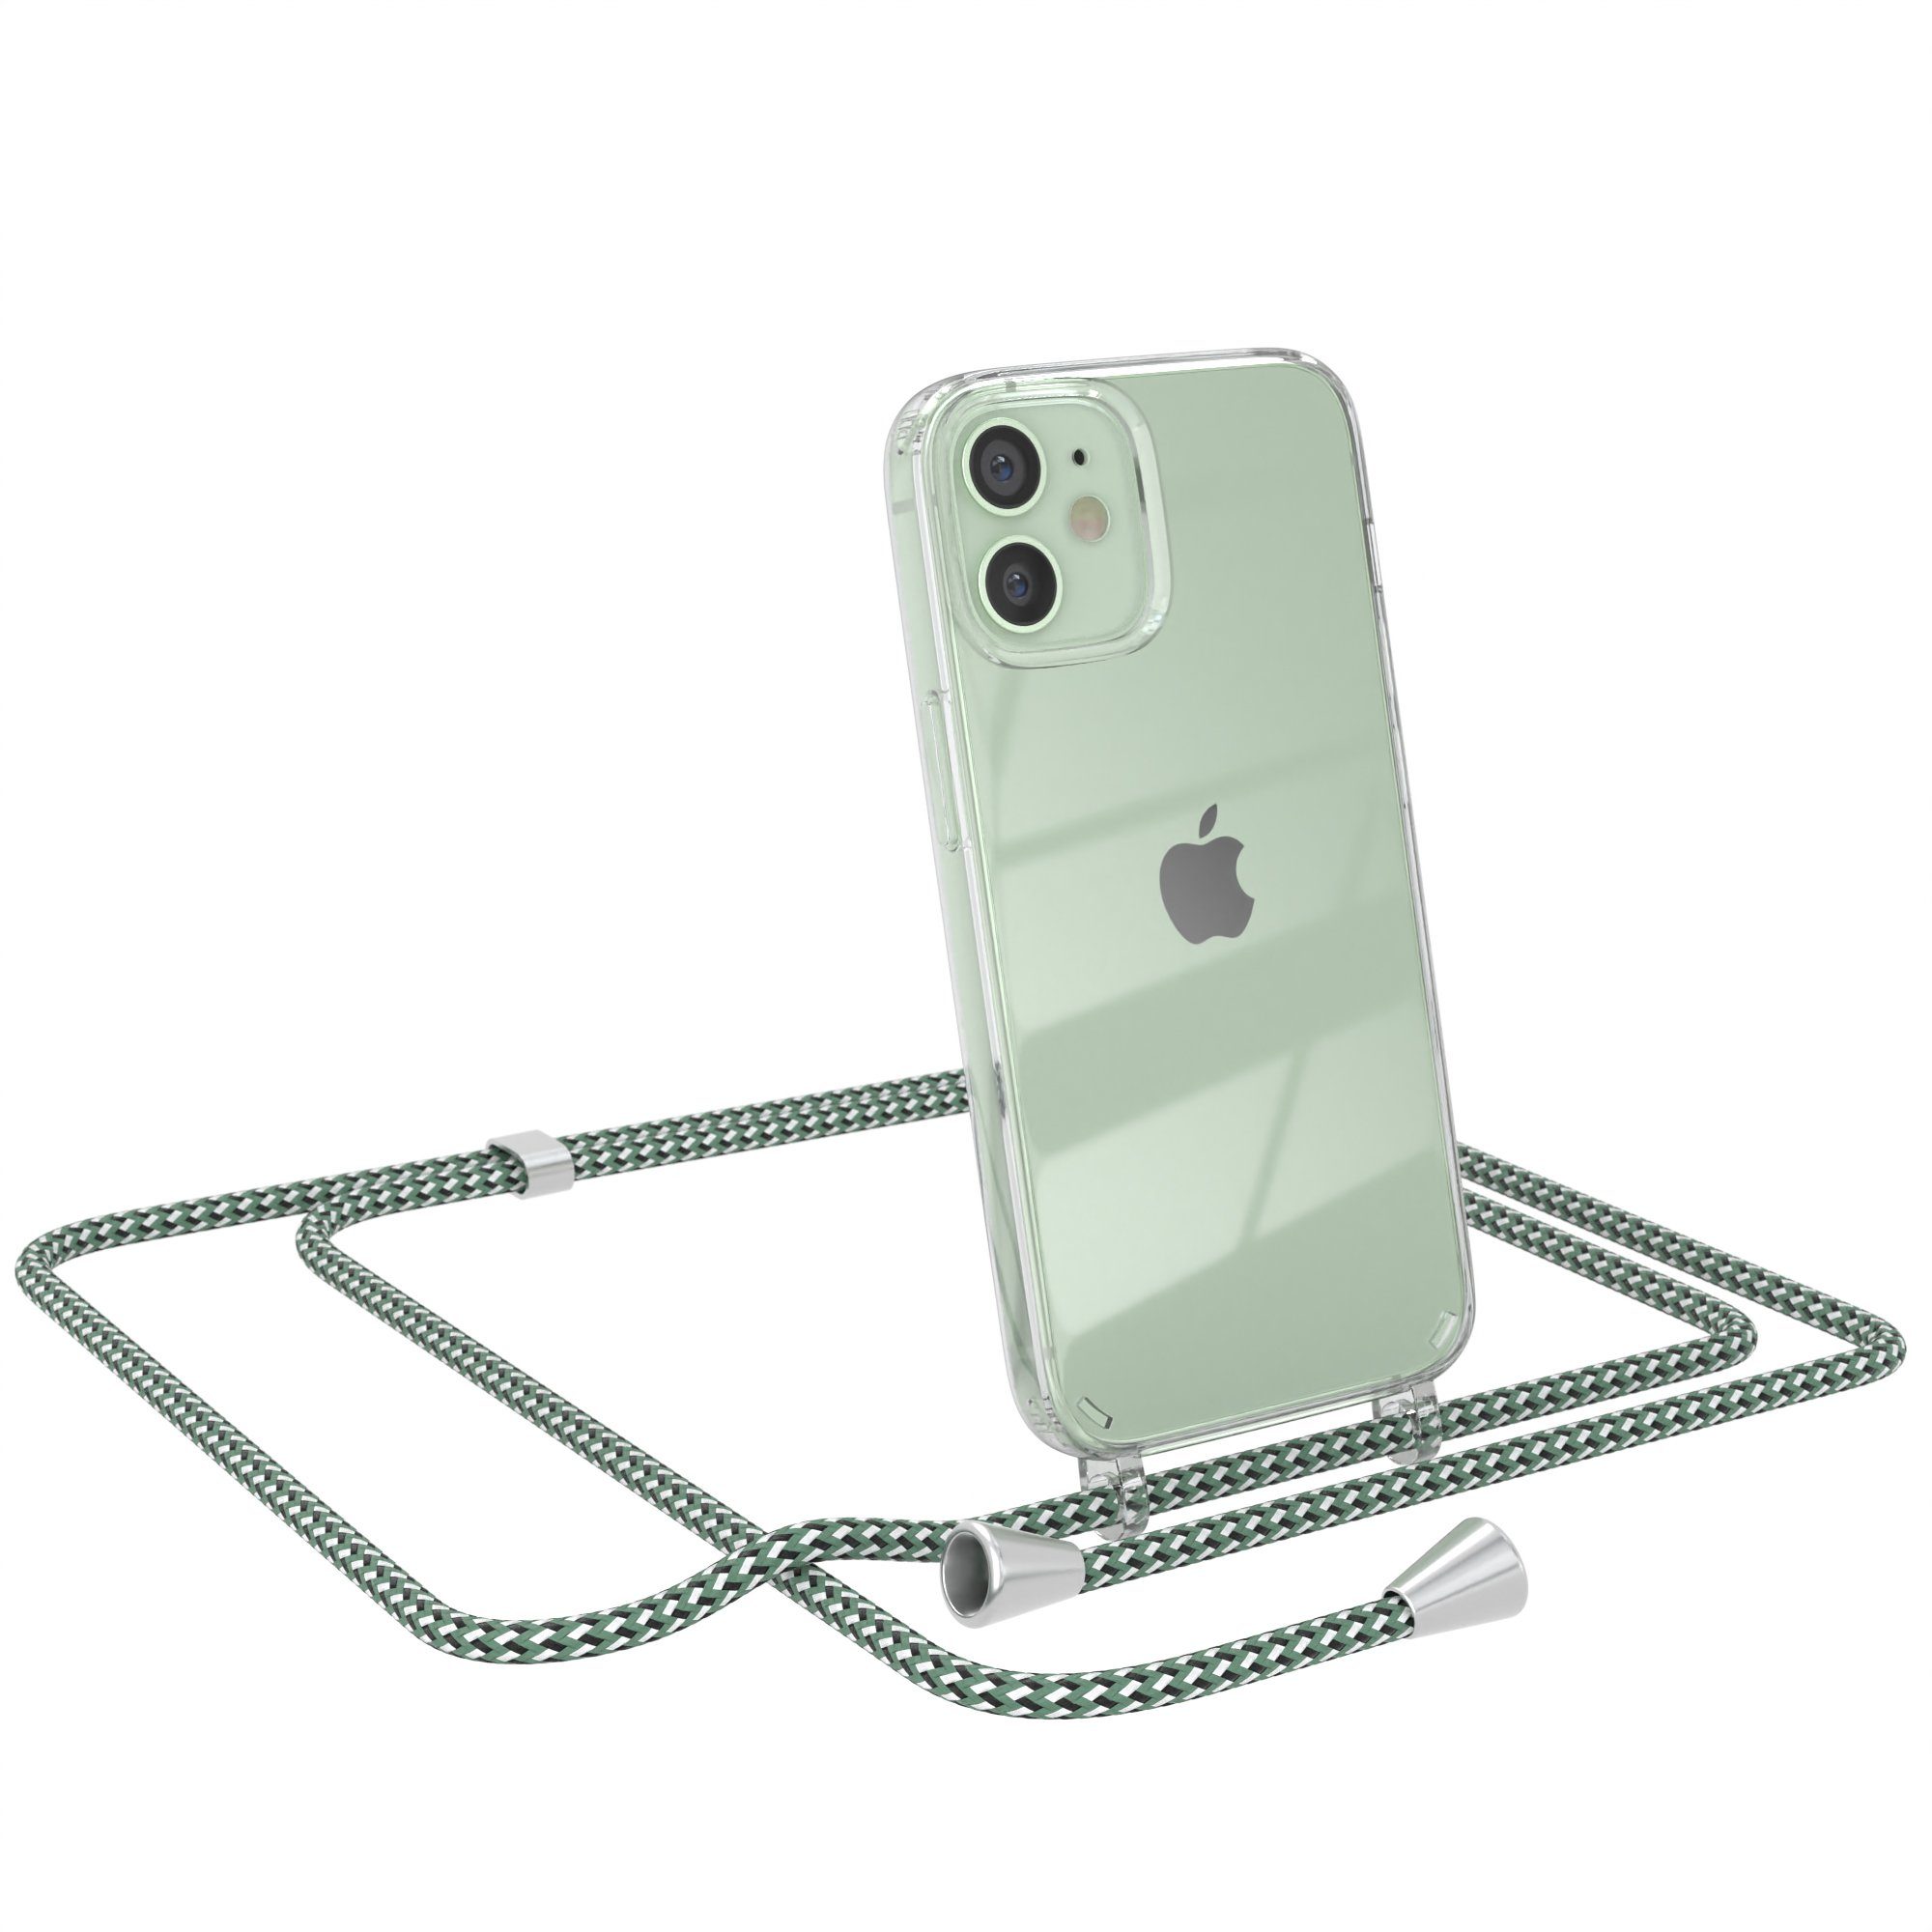 EAZY CASE Handykette Hülle mit Kette für Apple iPhone 12 Mini 5,4 Zoll, Kettenhülle zum Umhängen Tasche Cross Bag Handykordel Cover Grün Weiß